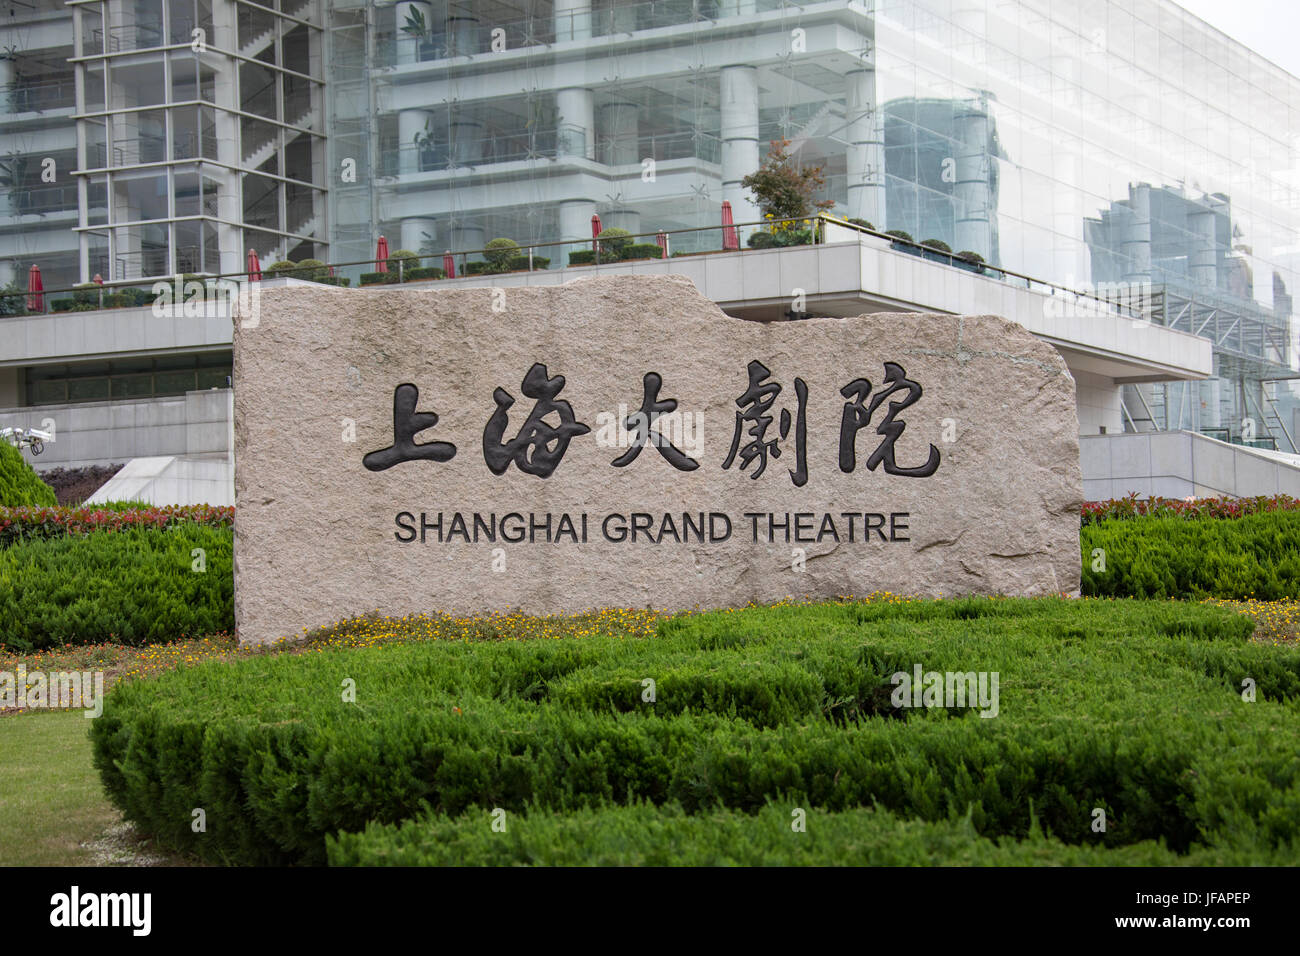 Shanghai Grand Theatre, Shanghai, China Stock Photo